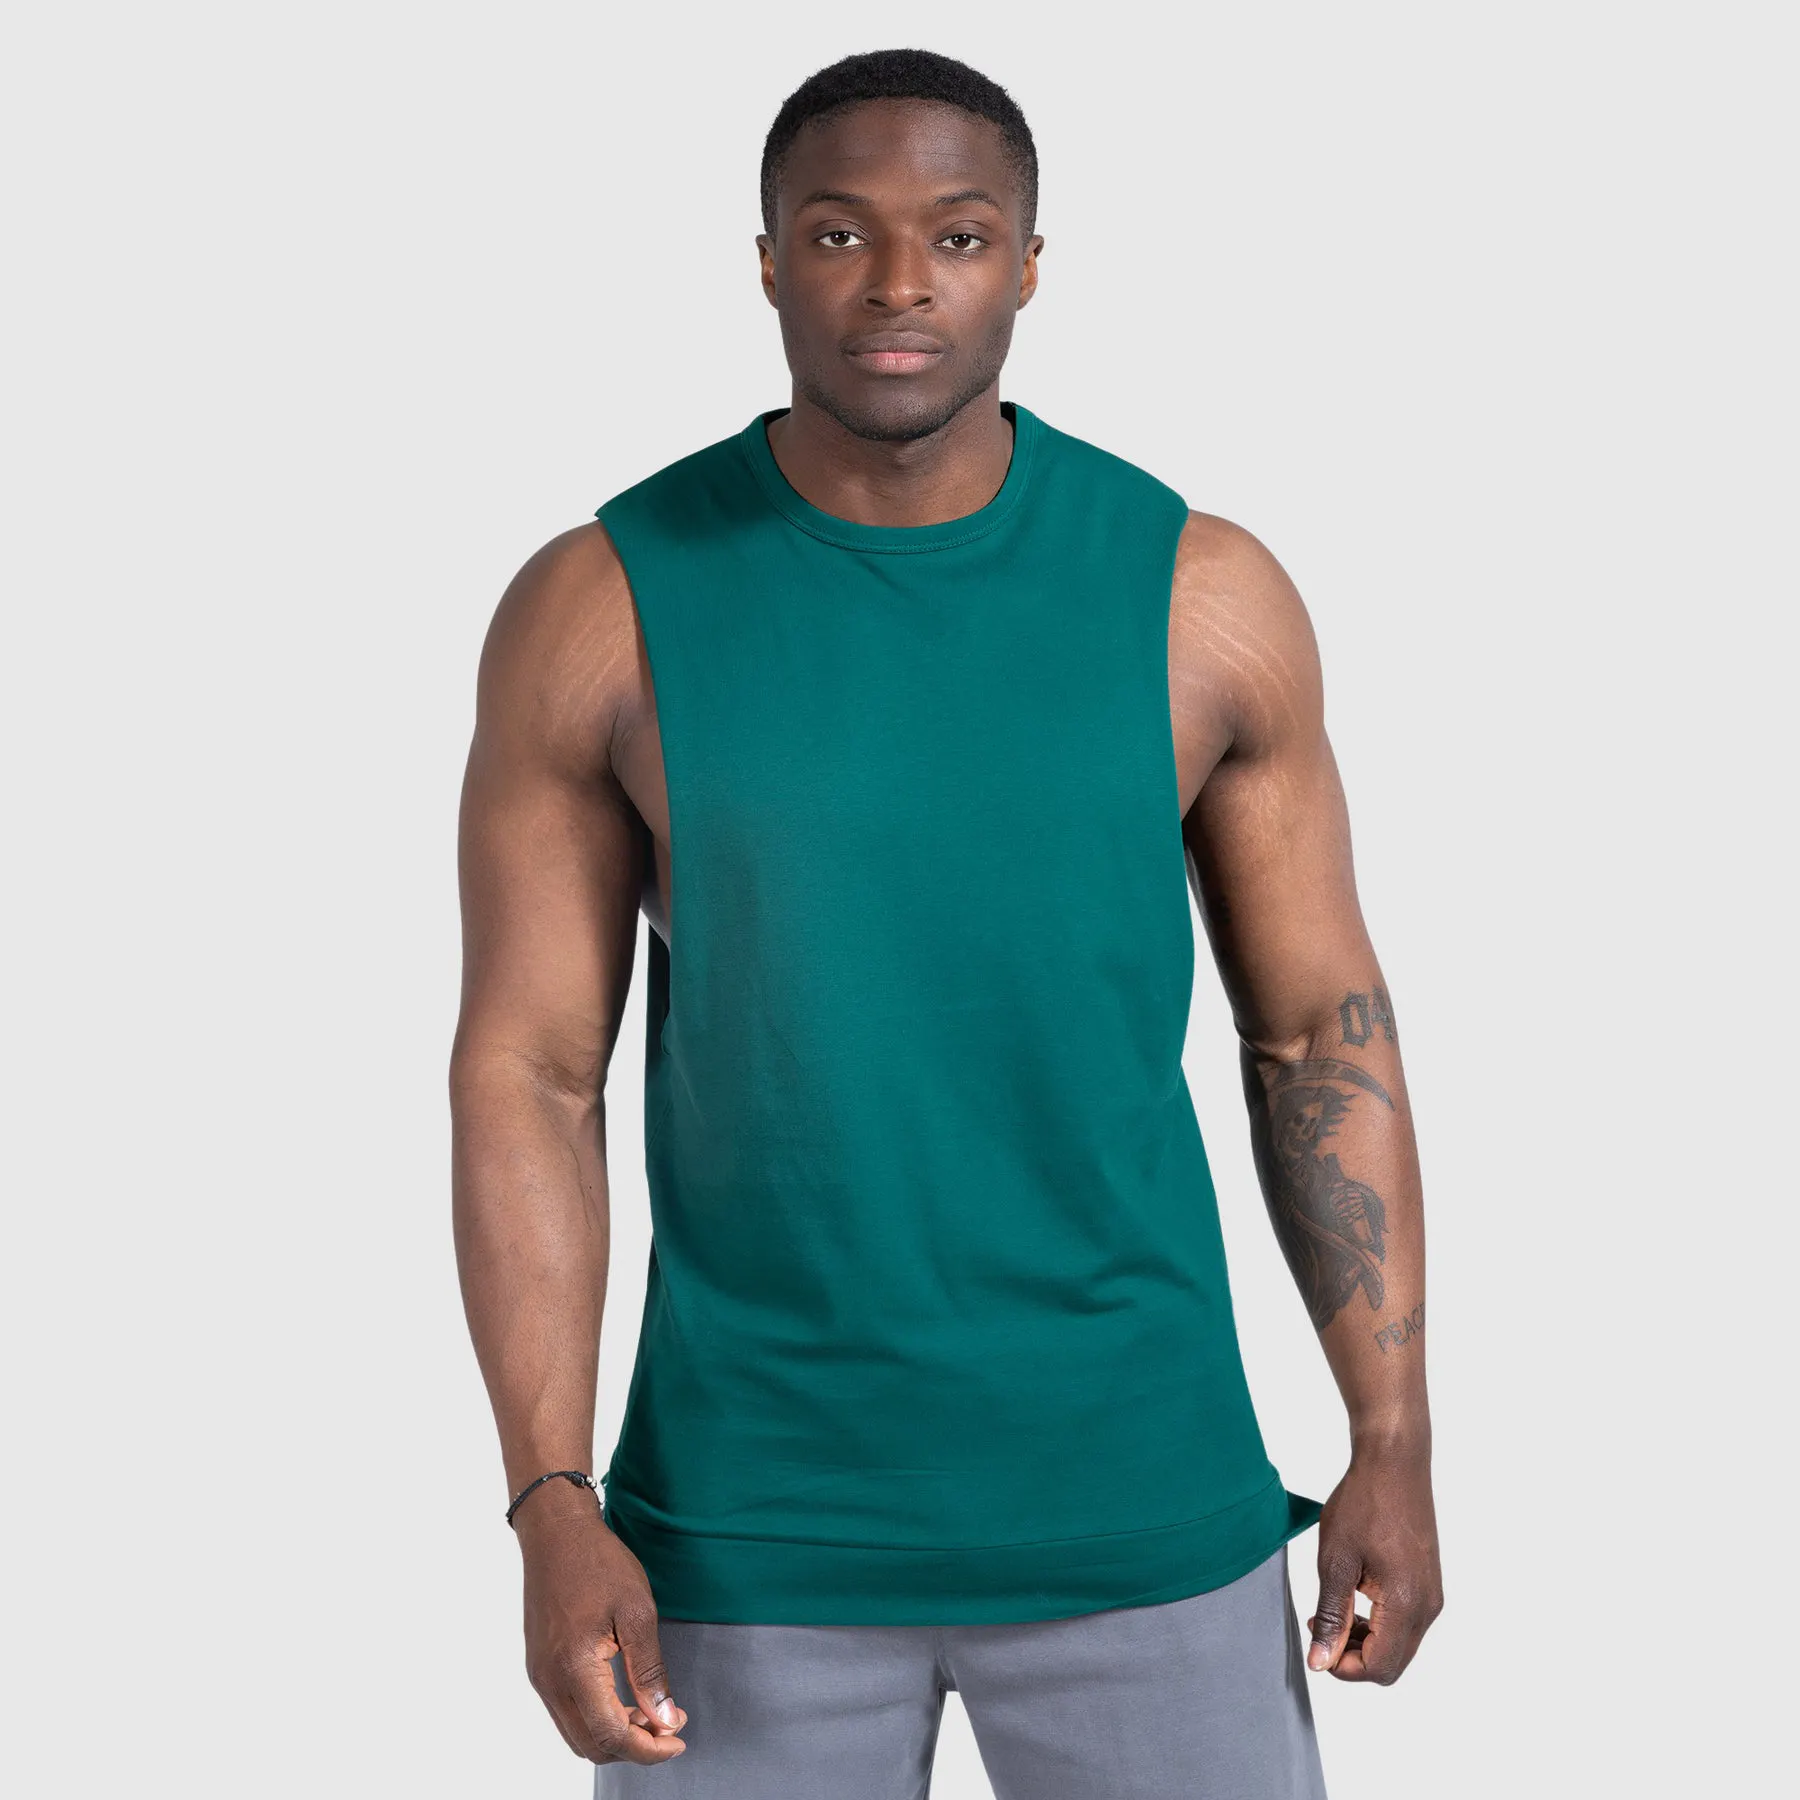 Oem-Camiseta sin mangas deportiva transpirable para hombre, ropa deportiva de secado rápido 100% poliéster, chaleco de gimnasio sin mangas para verano